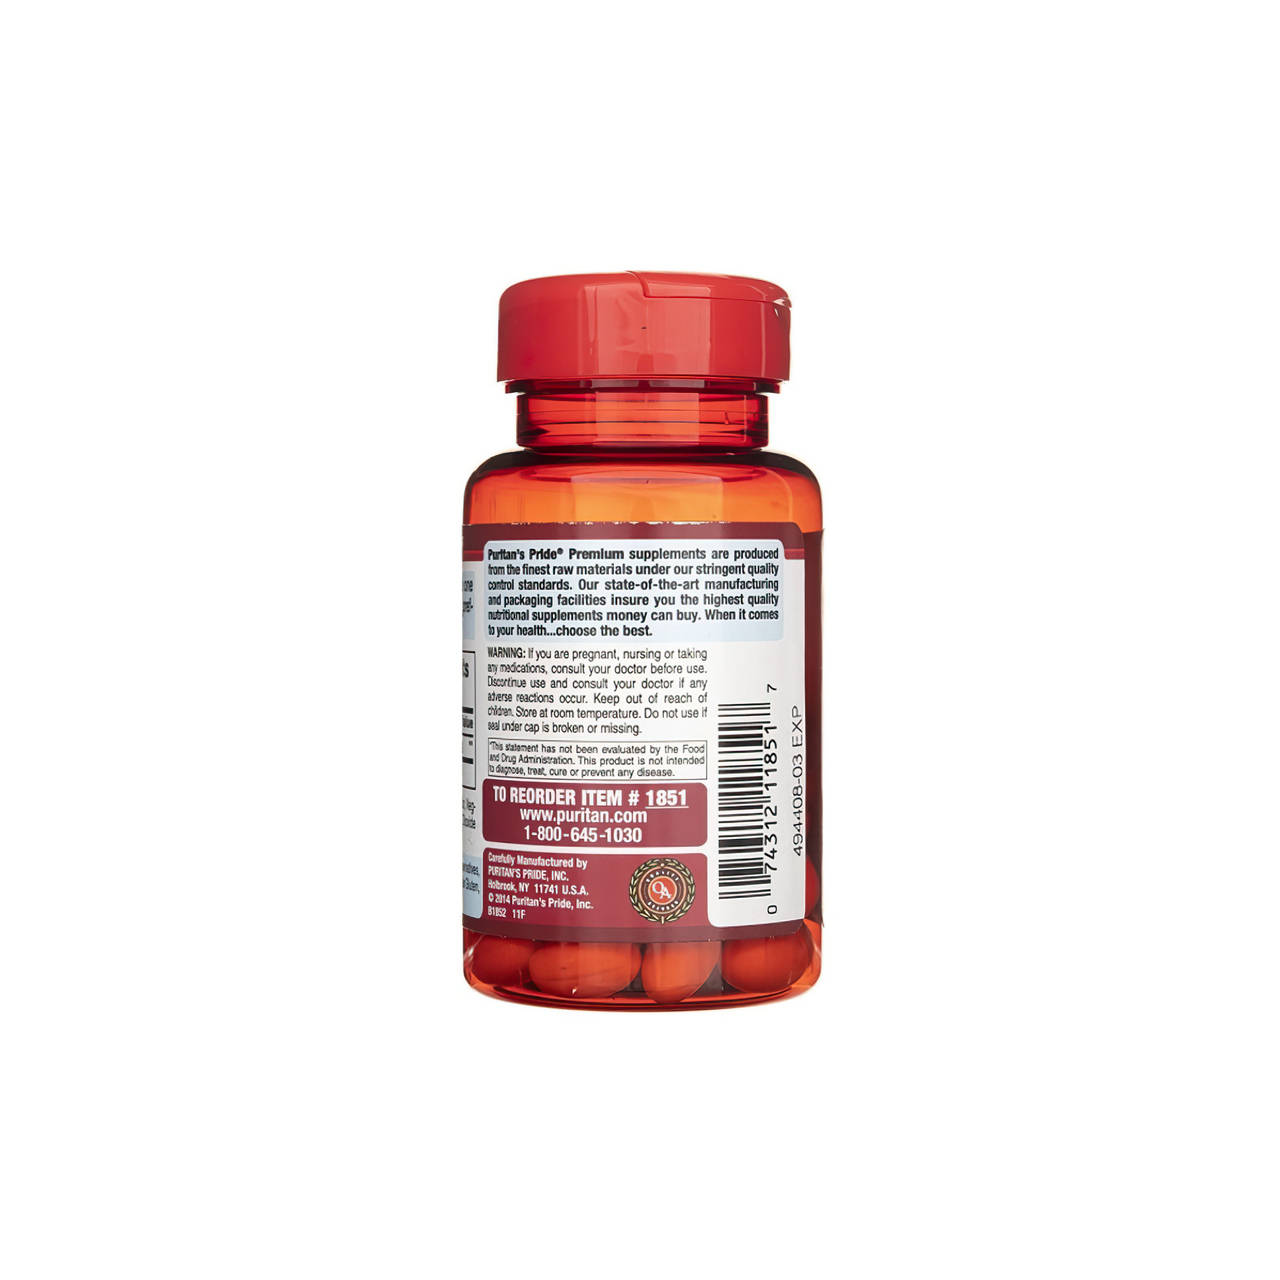 Um frasco de Coenzyme Q10 - 120 mg 60 Rapid Release softgels da Puritan's Pride sobre um fundo branco.